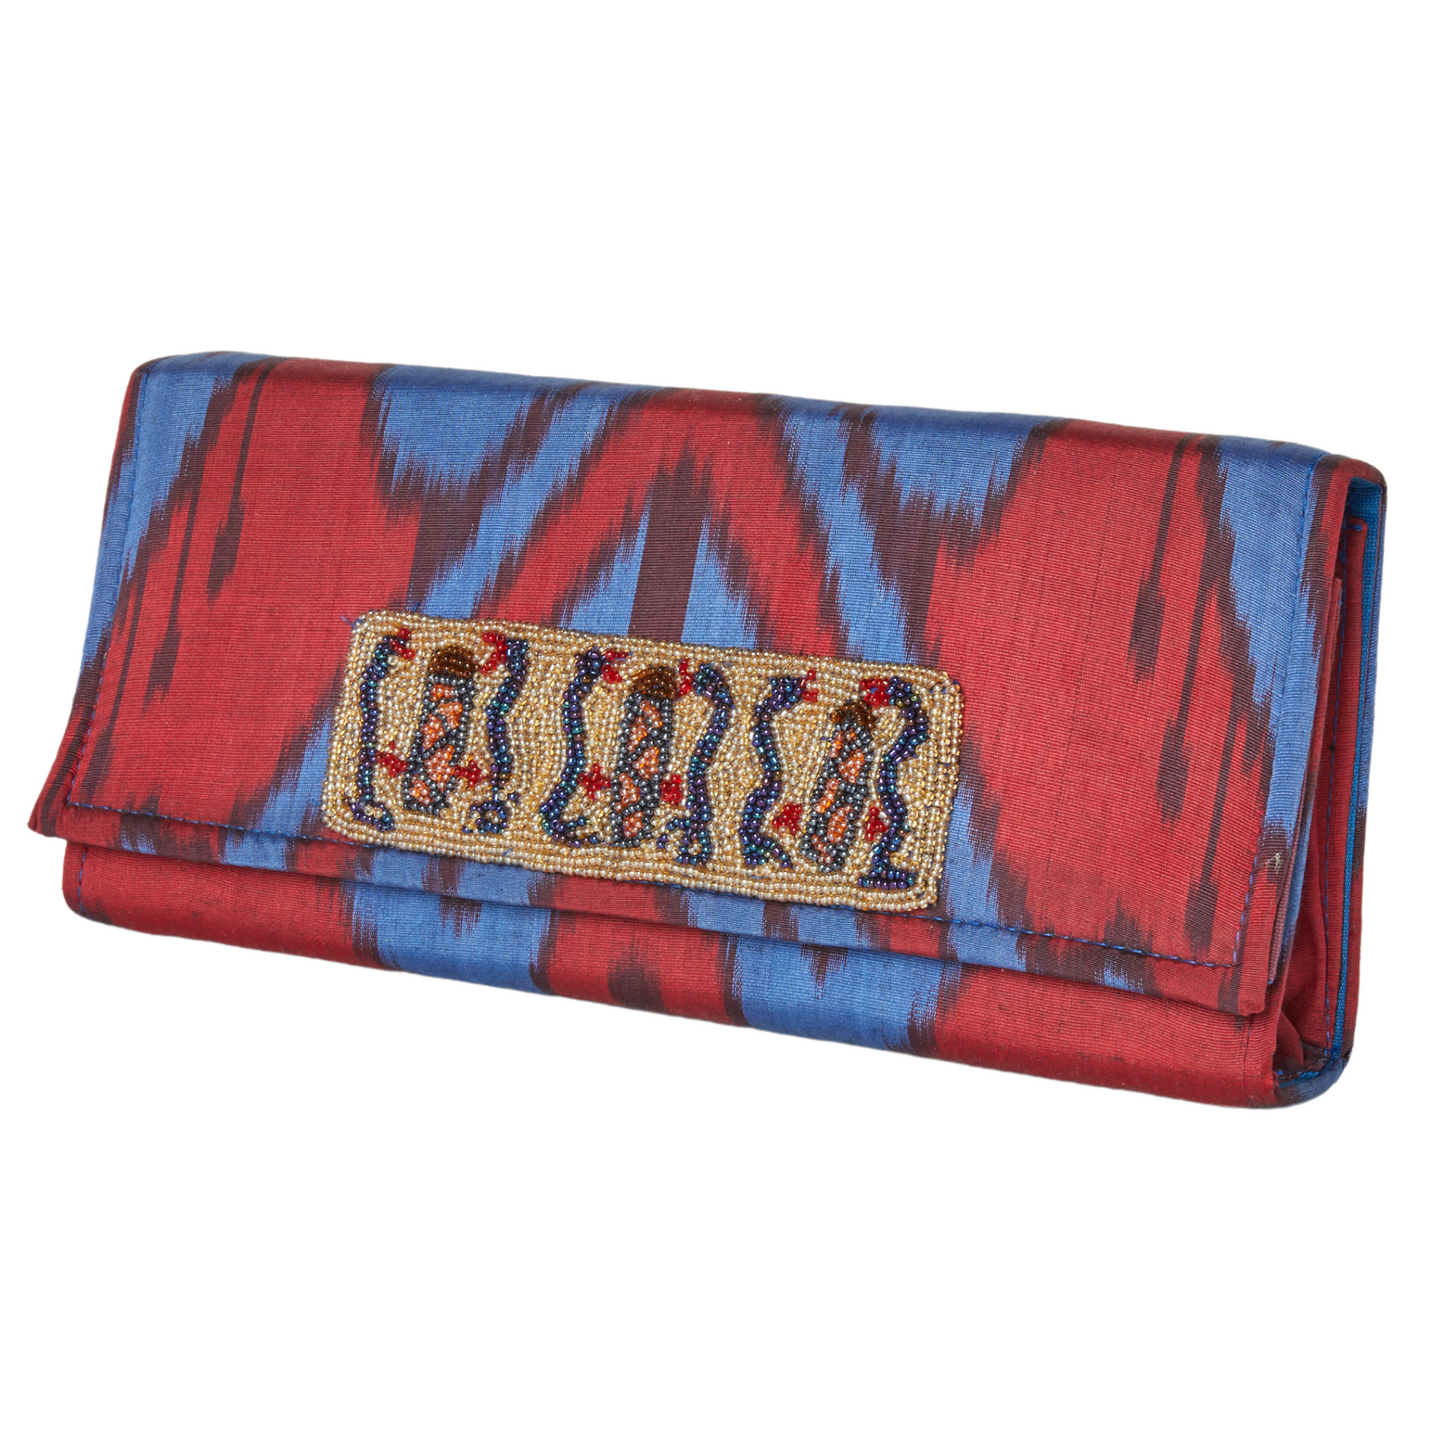 Du Monde Collection - Rowan Silk Ikat Clutch - Red, Blue